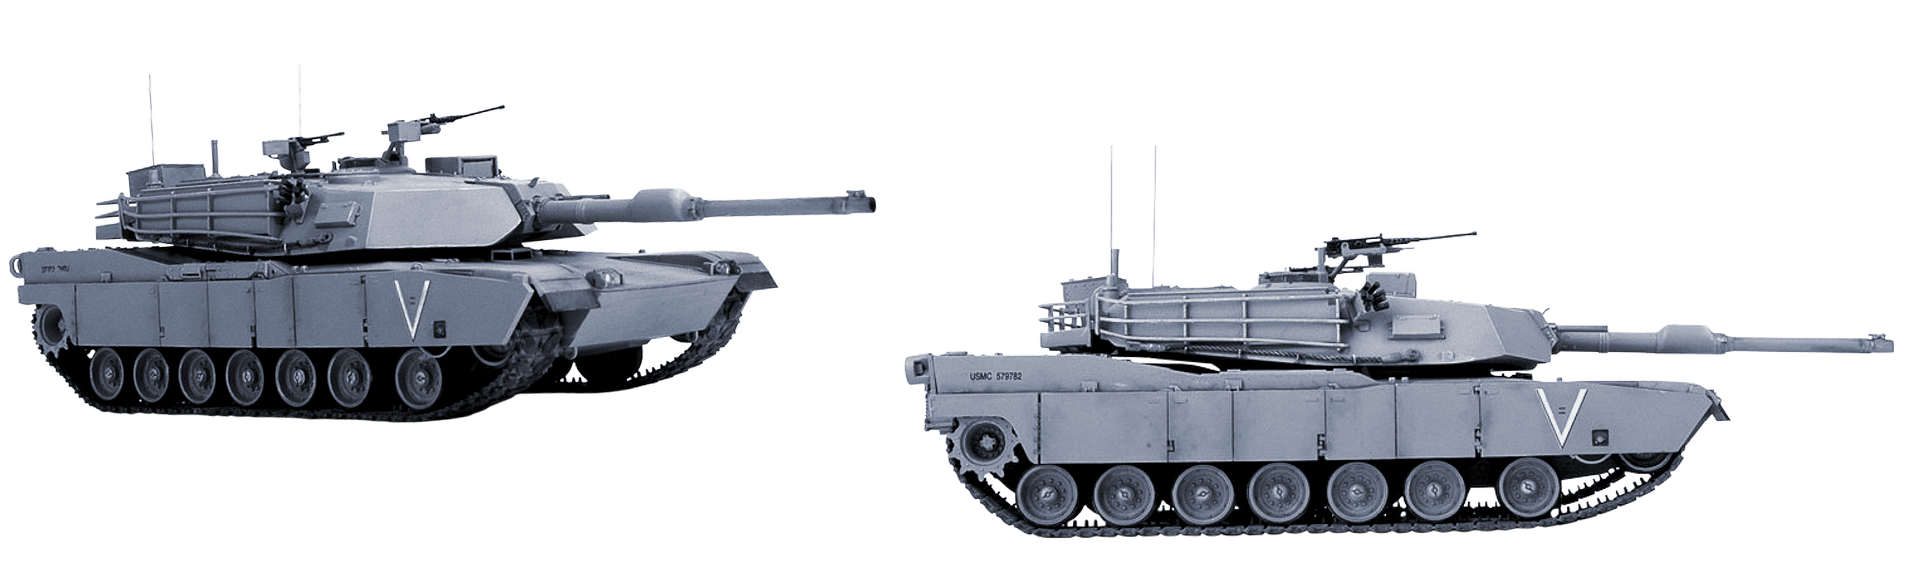 Tanks PNG Image